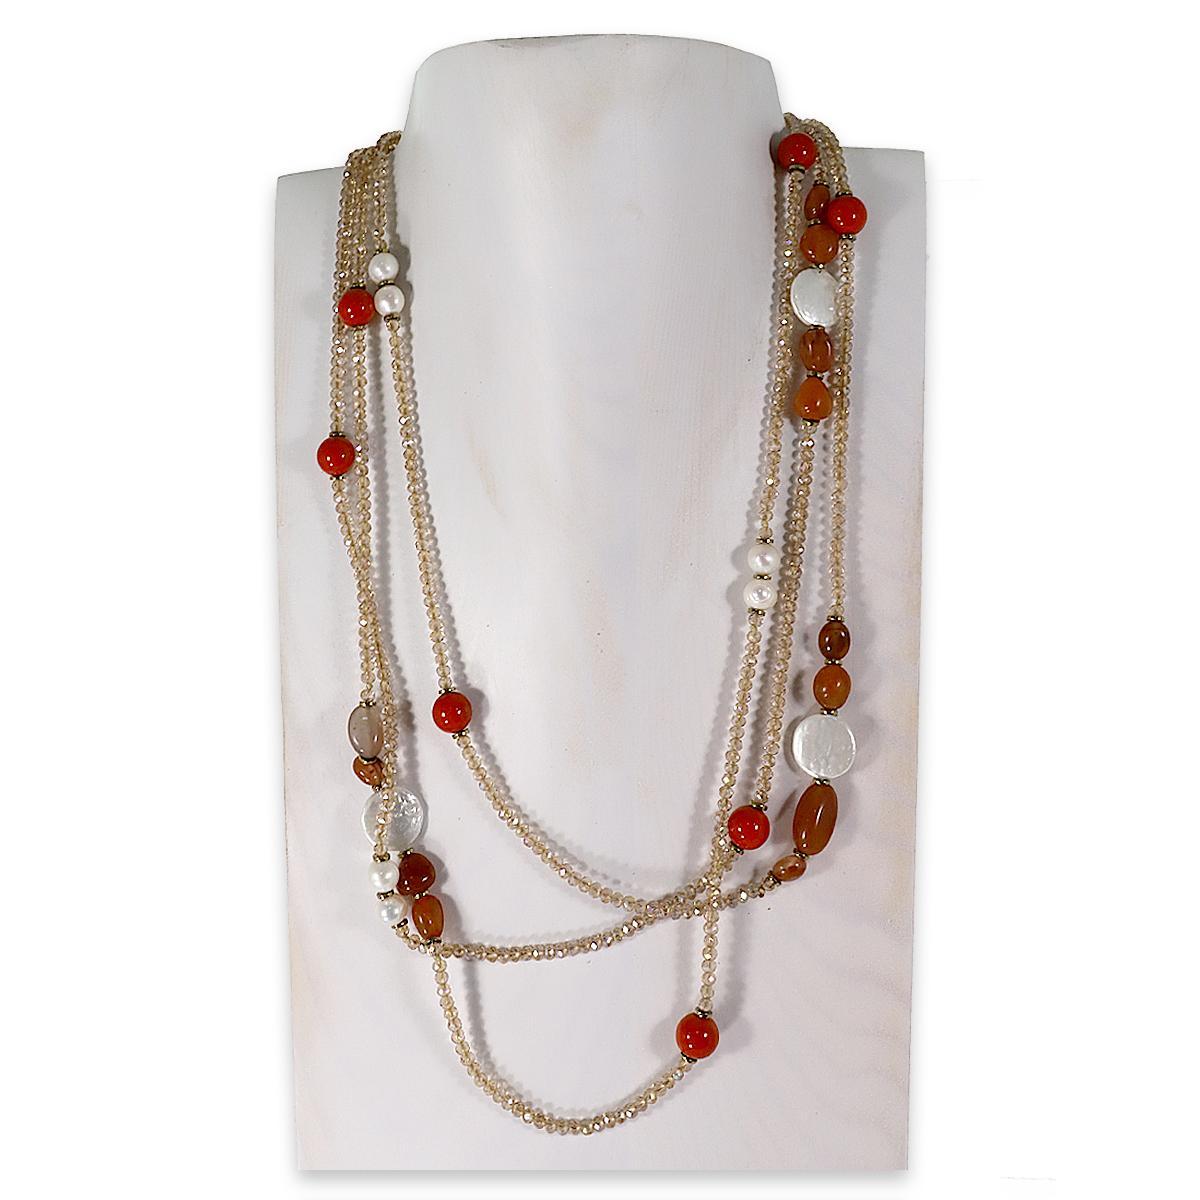 Collana montata in cristallo, perle di fiume, diaspro rosso, avventurina rossa